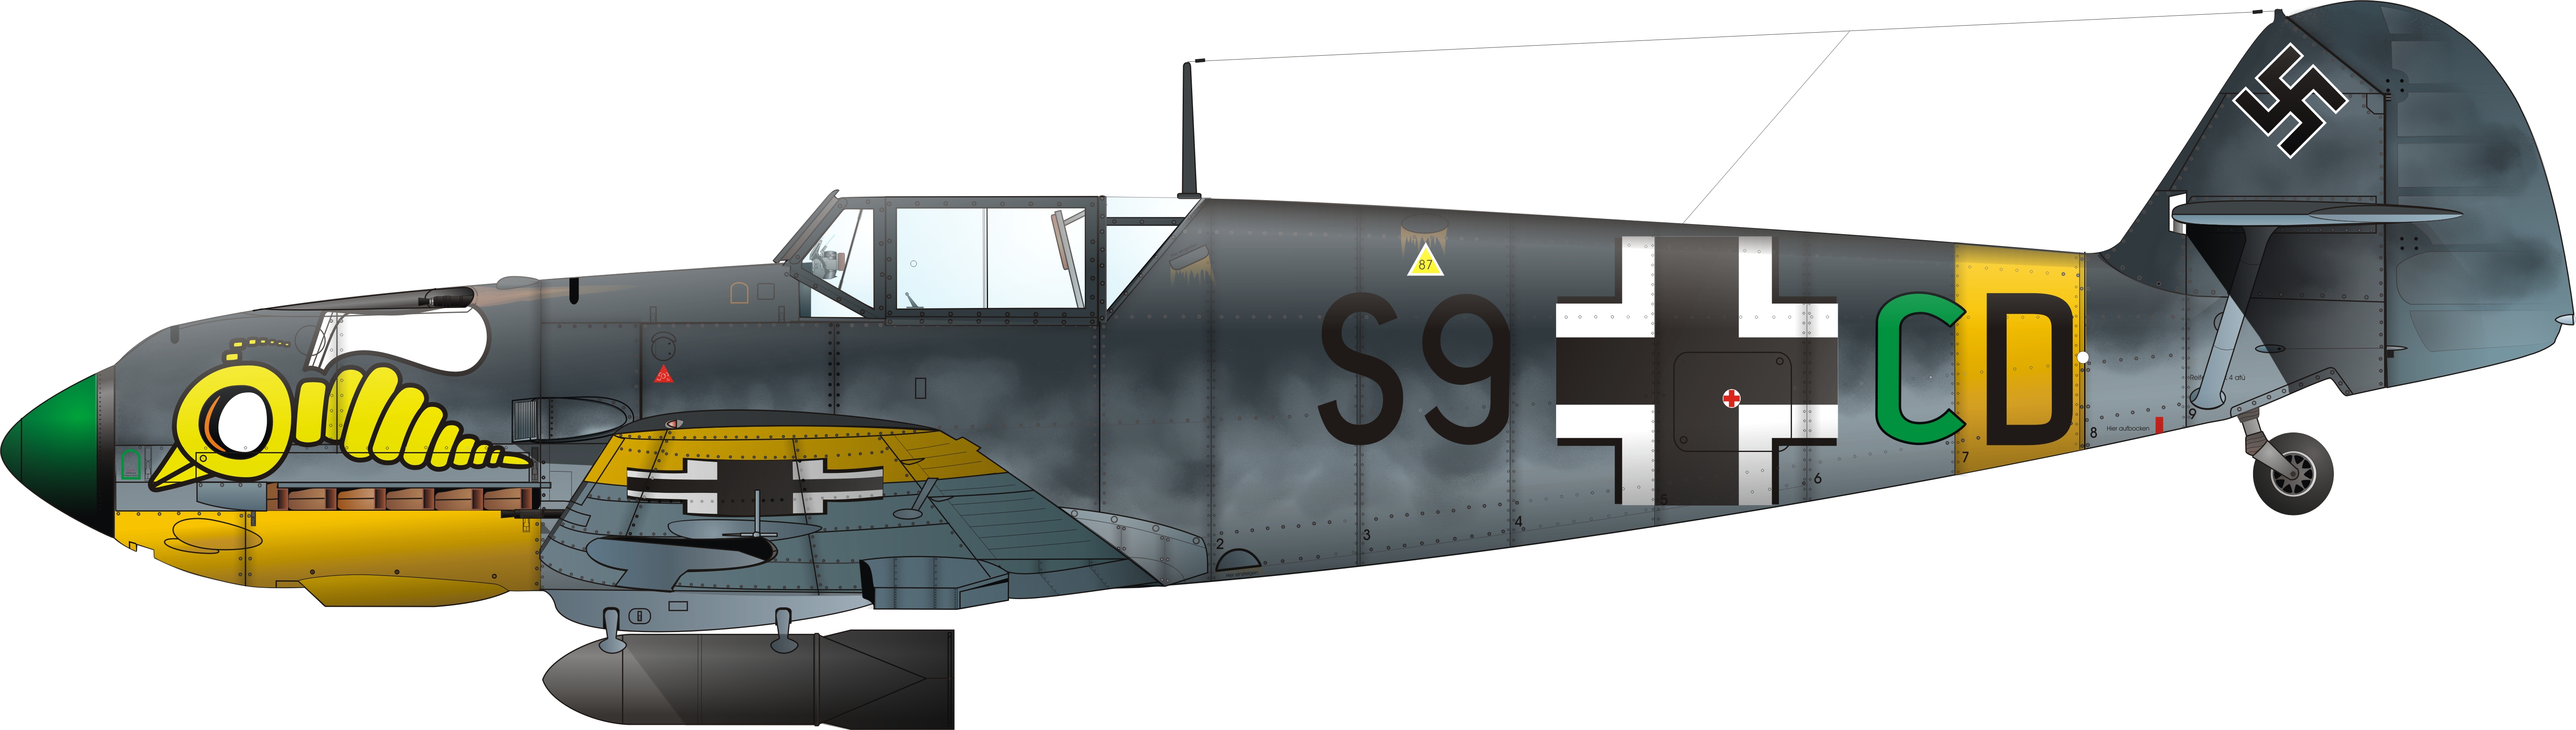 Messerschmitt Bf 109e7b Stab Iii - HD Wallpaper 